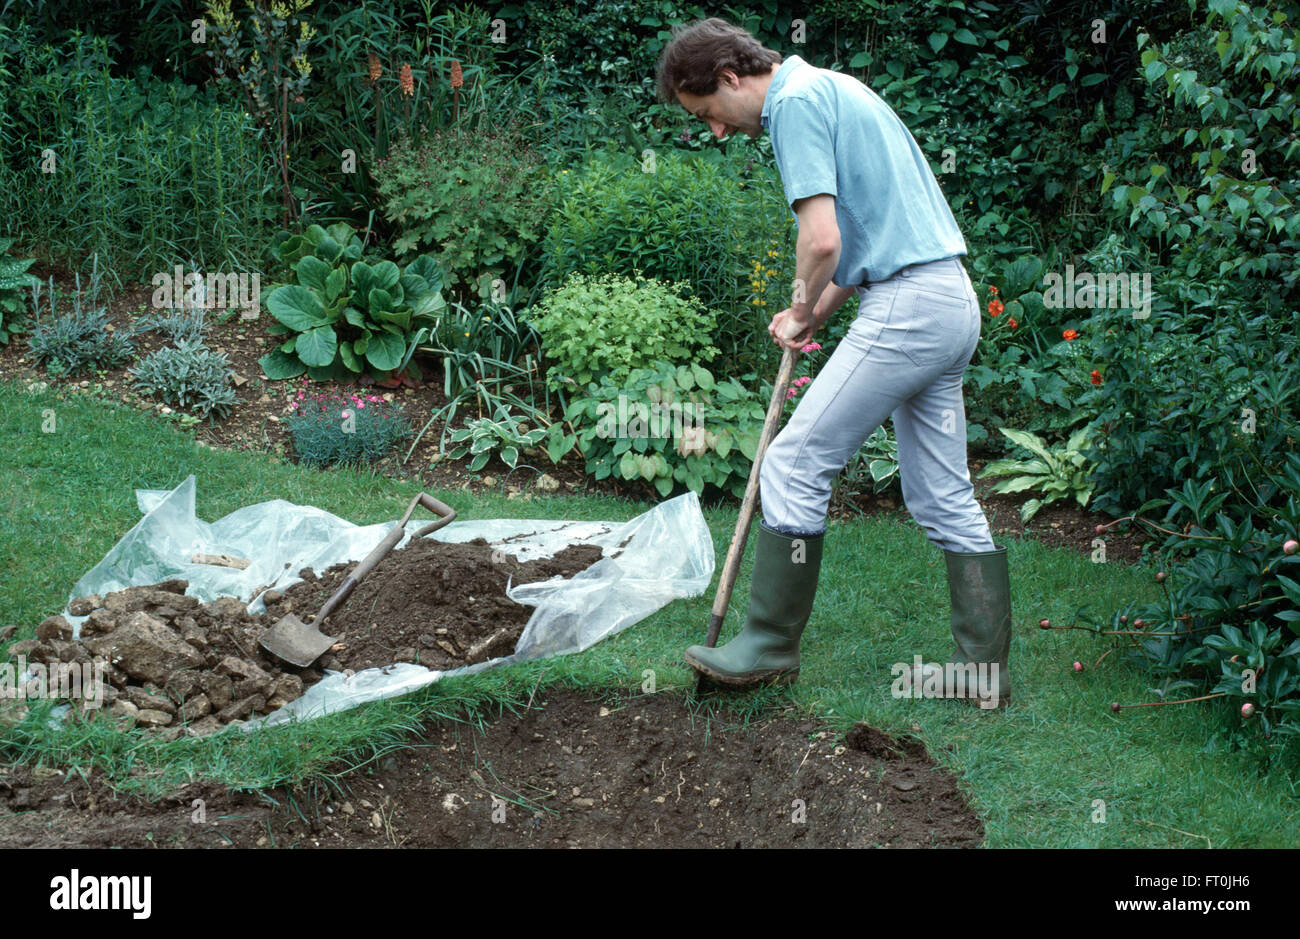 Gärtner, die gemessene Fläche im Rasen für einen neuen Teich für redaktionelles ausgraben Stockfoto